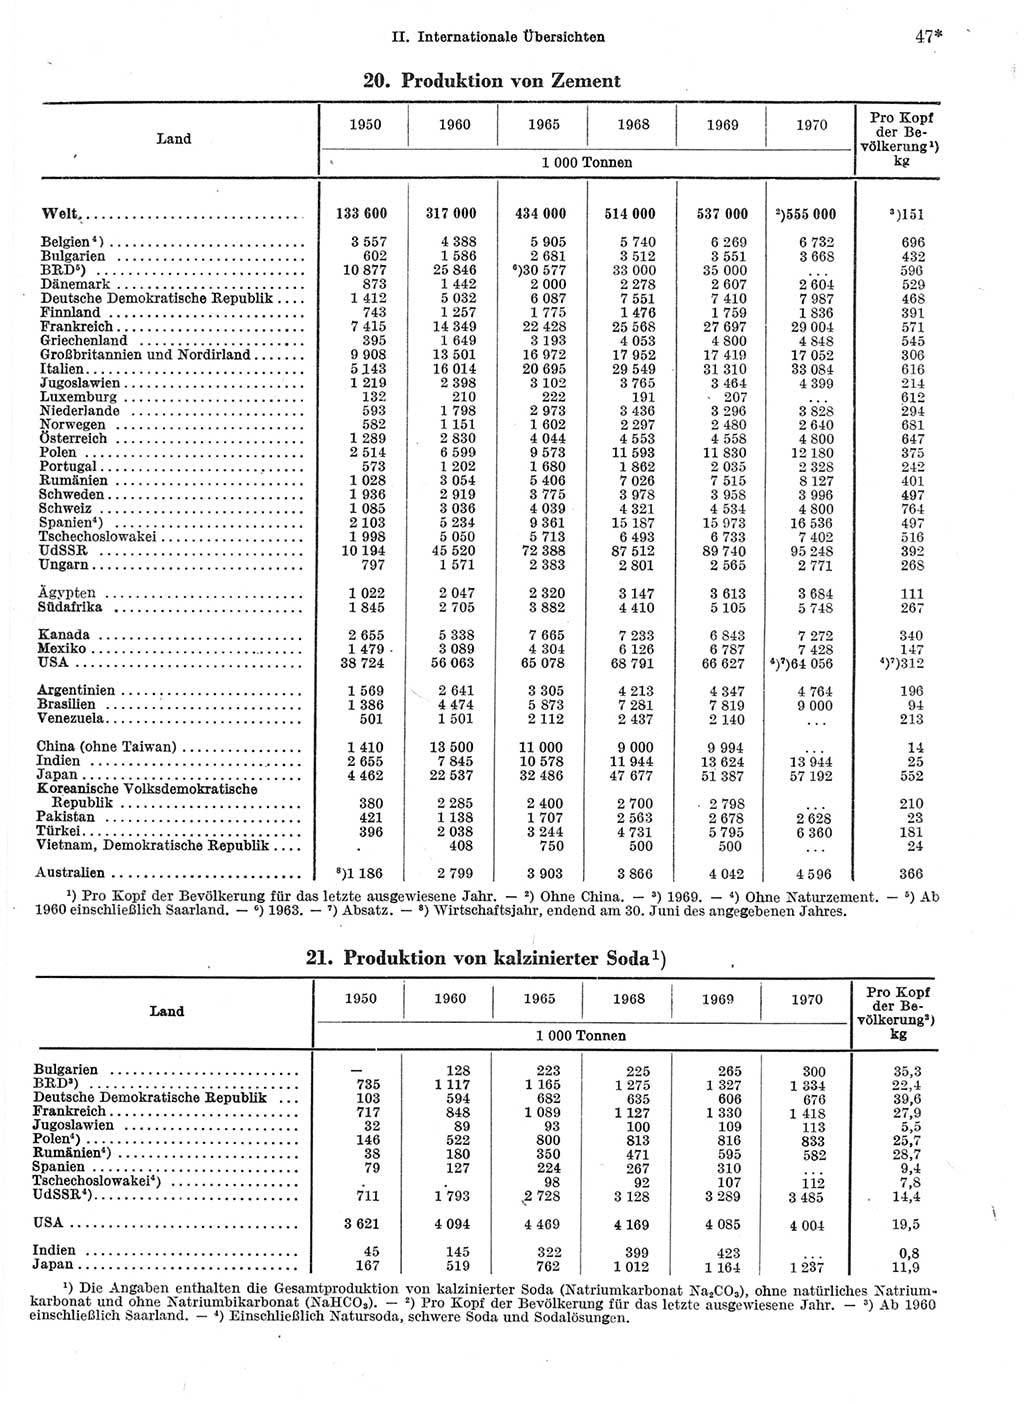 Statistisches Jahrbuch der Deutschen Demokratischen Republik (DDR) 1972, Seite 47 (Stat. Jb. DDR 1972, S. 47)